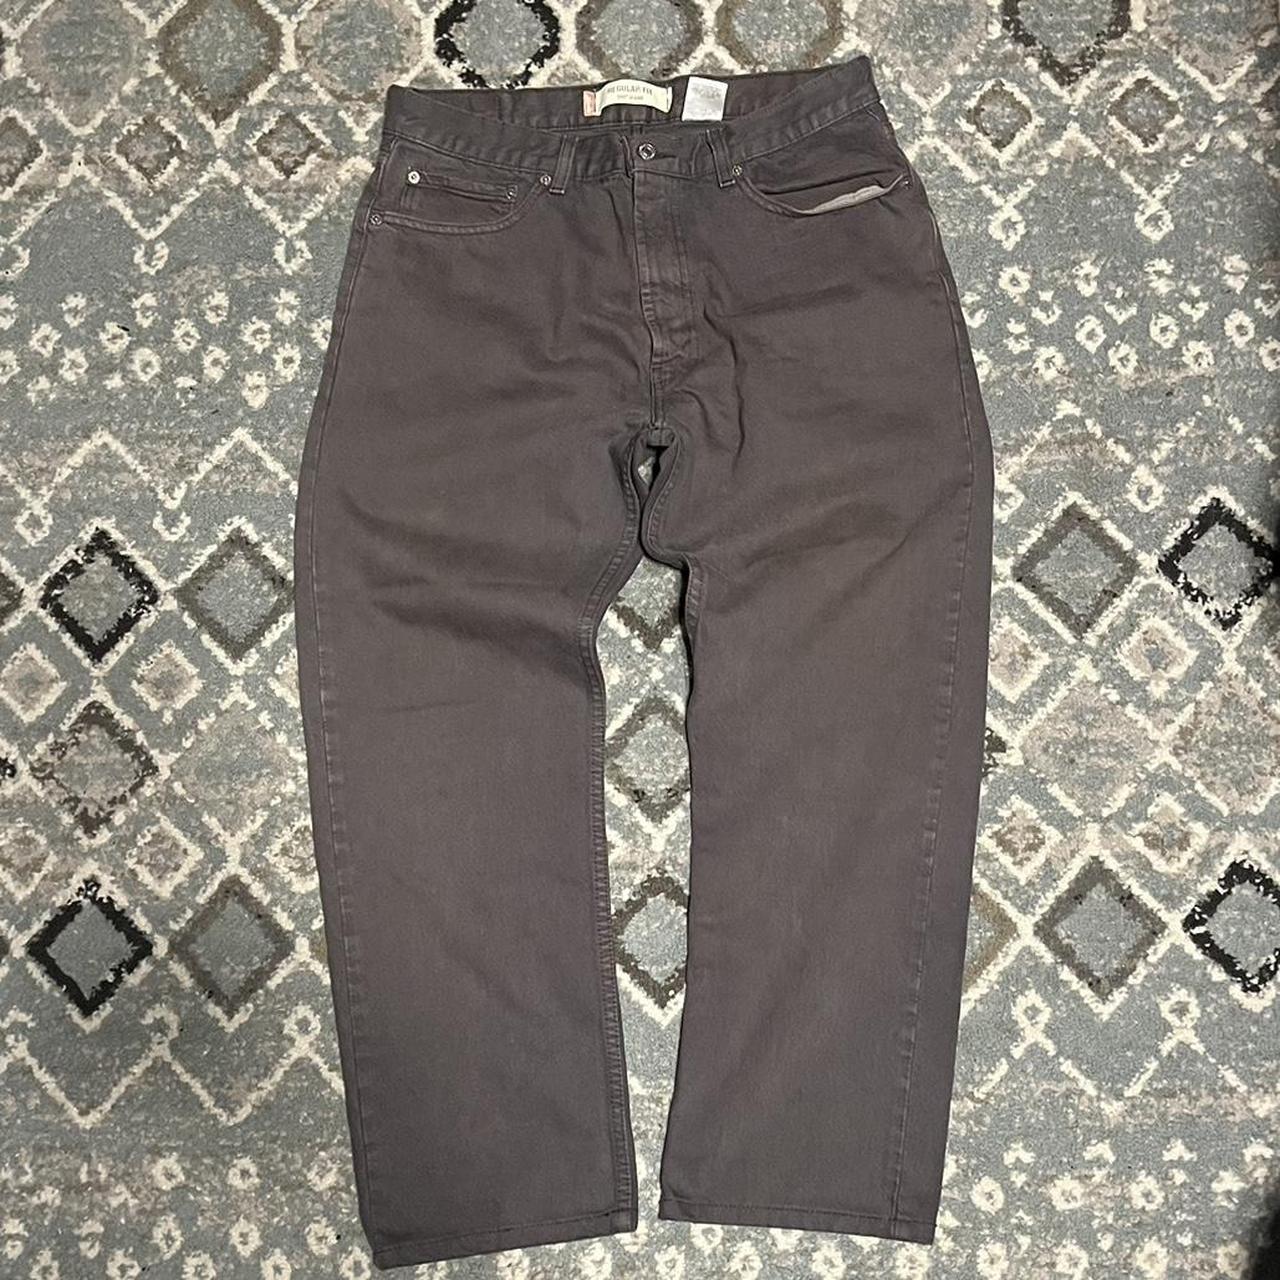 Levi’s 505 jeans size 34x30 - Depop